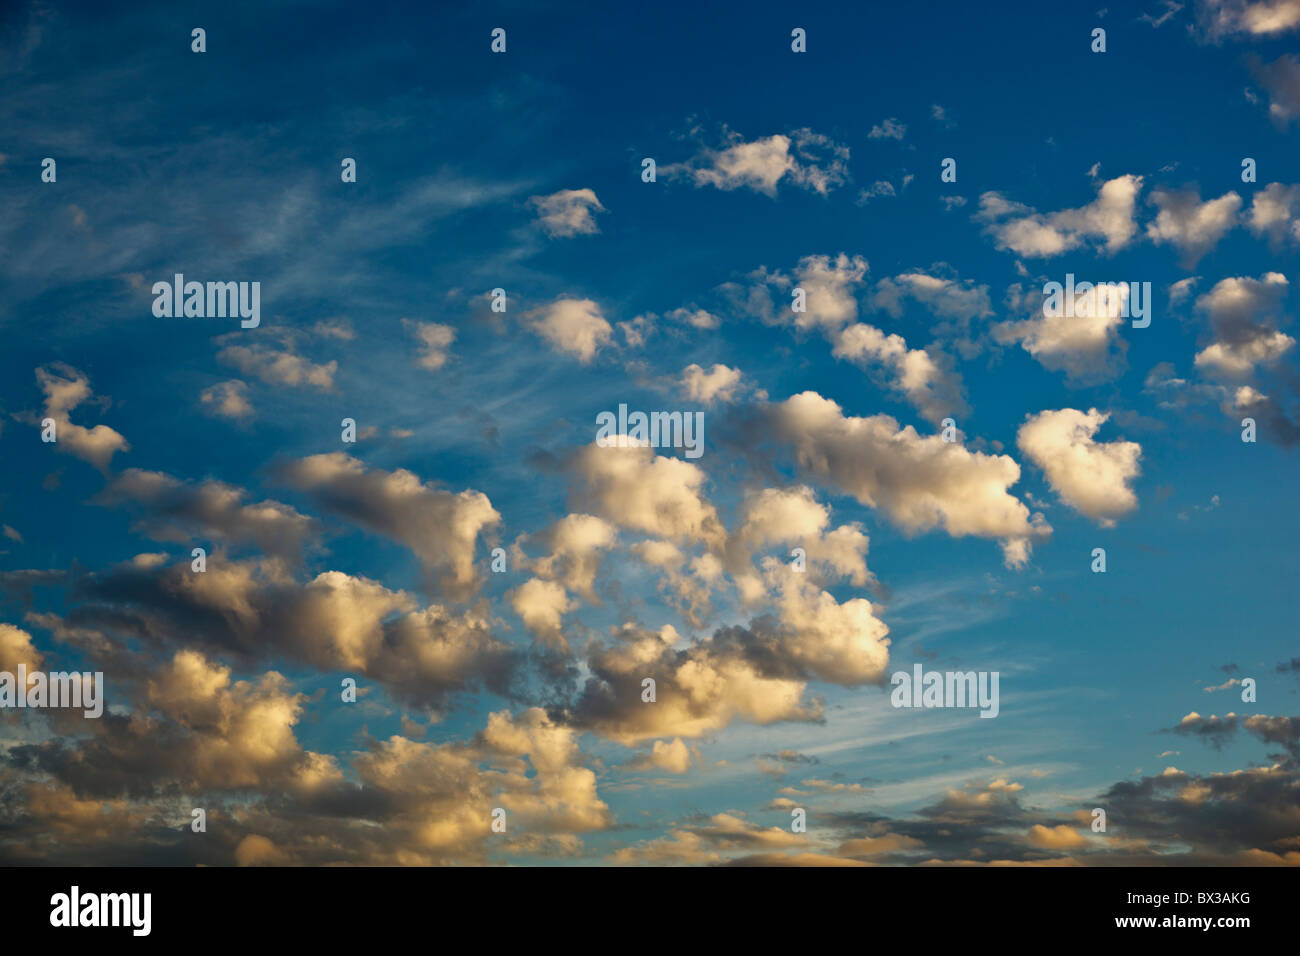 Altocumulus Clouds In A Blue Sky Stock Photo